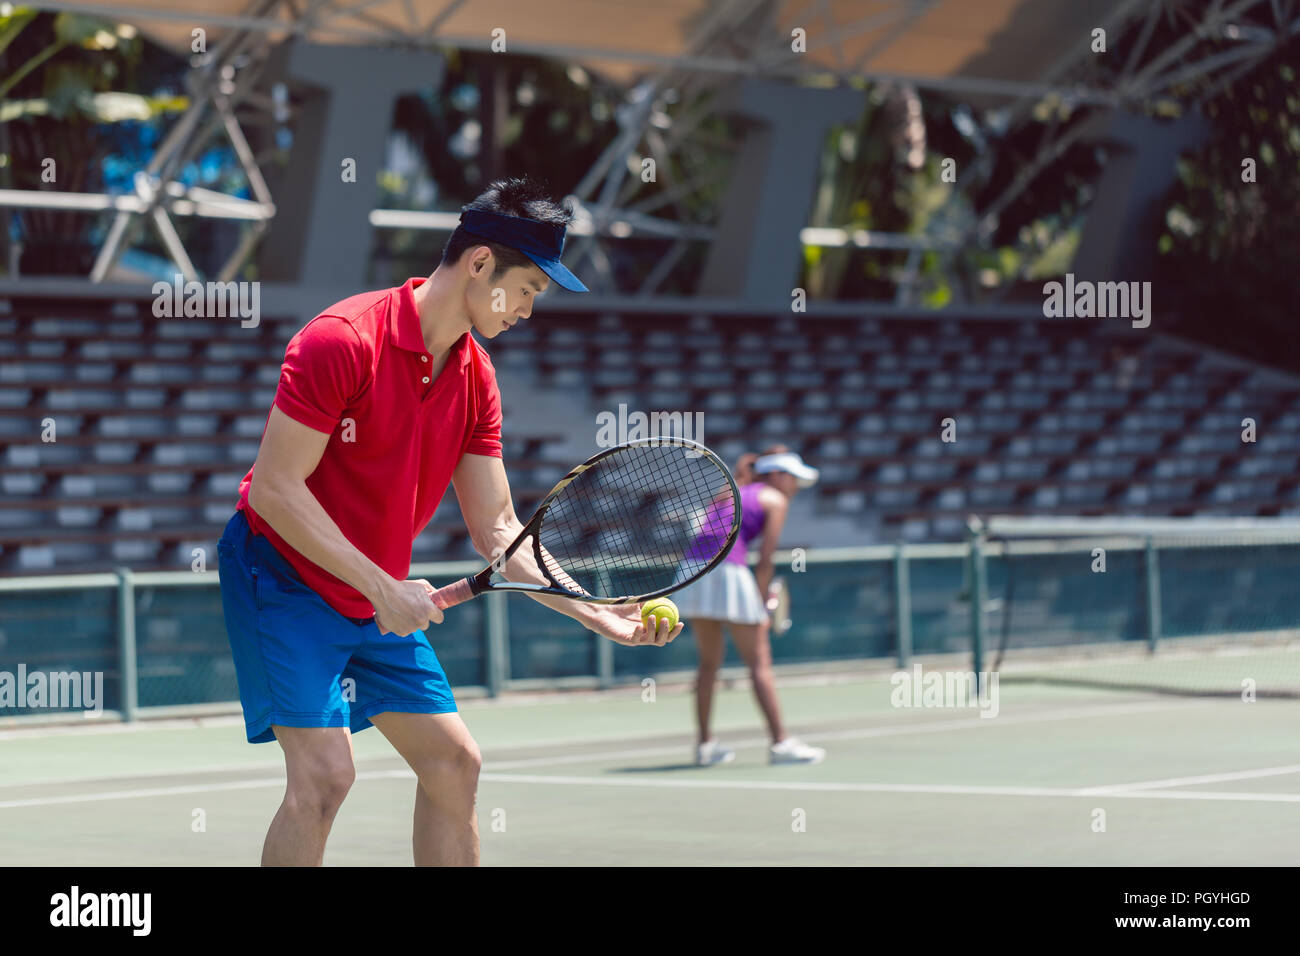 Vue latérale d'un joueur de tennis asiatique prêt à servir au début d'un match mixte en double sur un court de tennis professionnel Banque D'Images